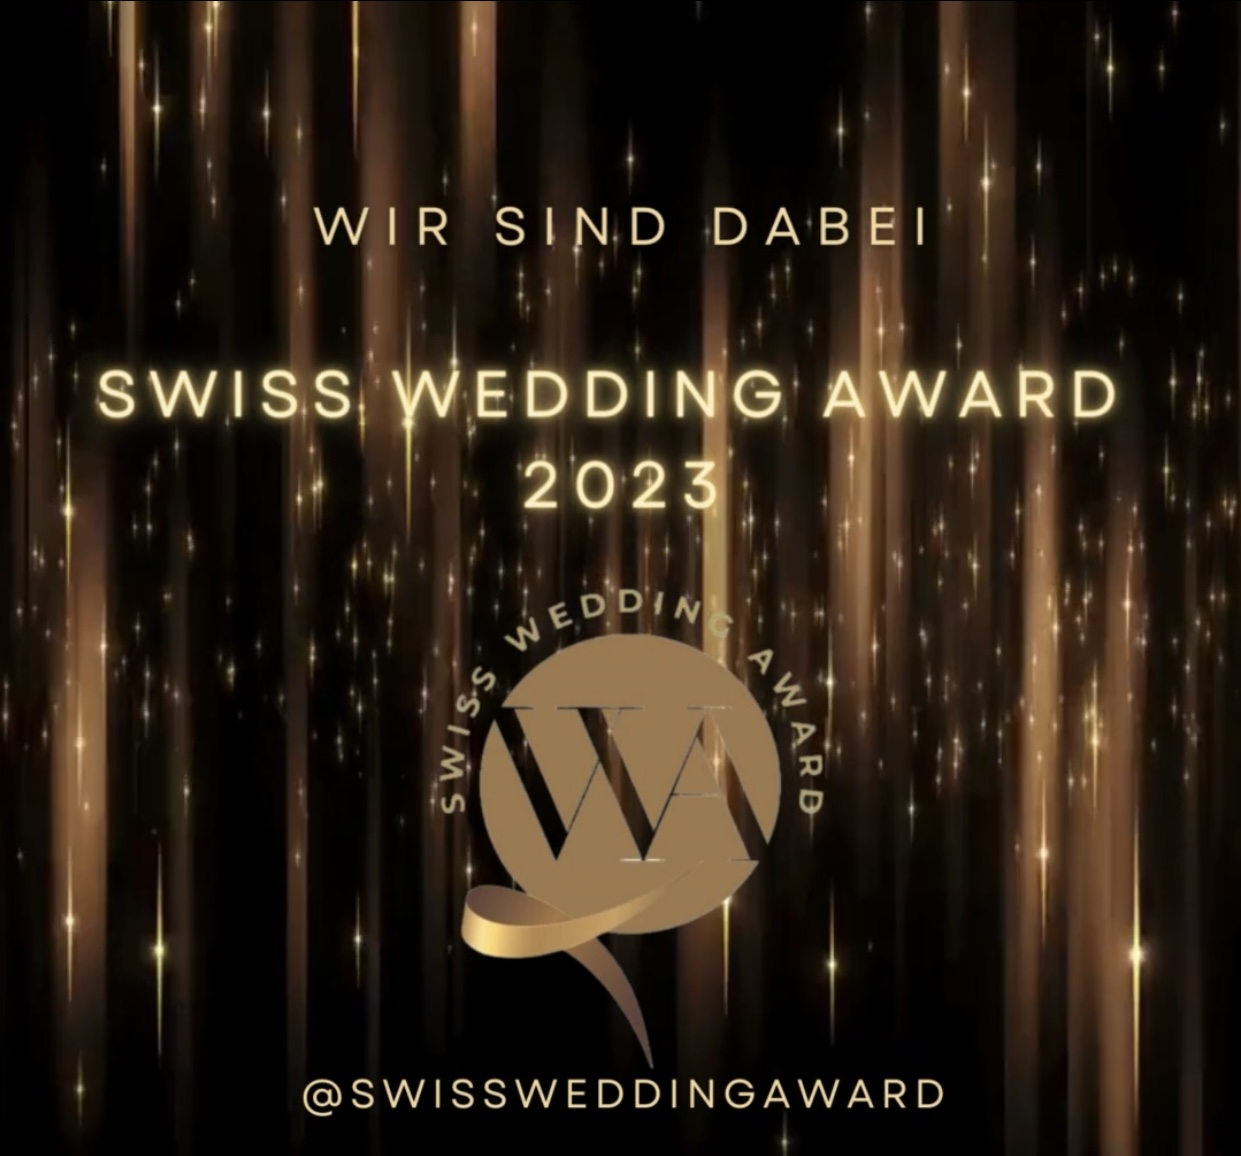 maison 58 nimmt am Swiss Wedding Award teil!